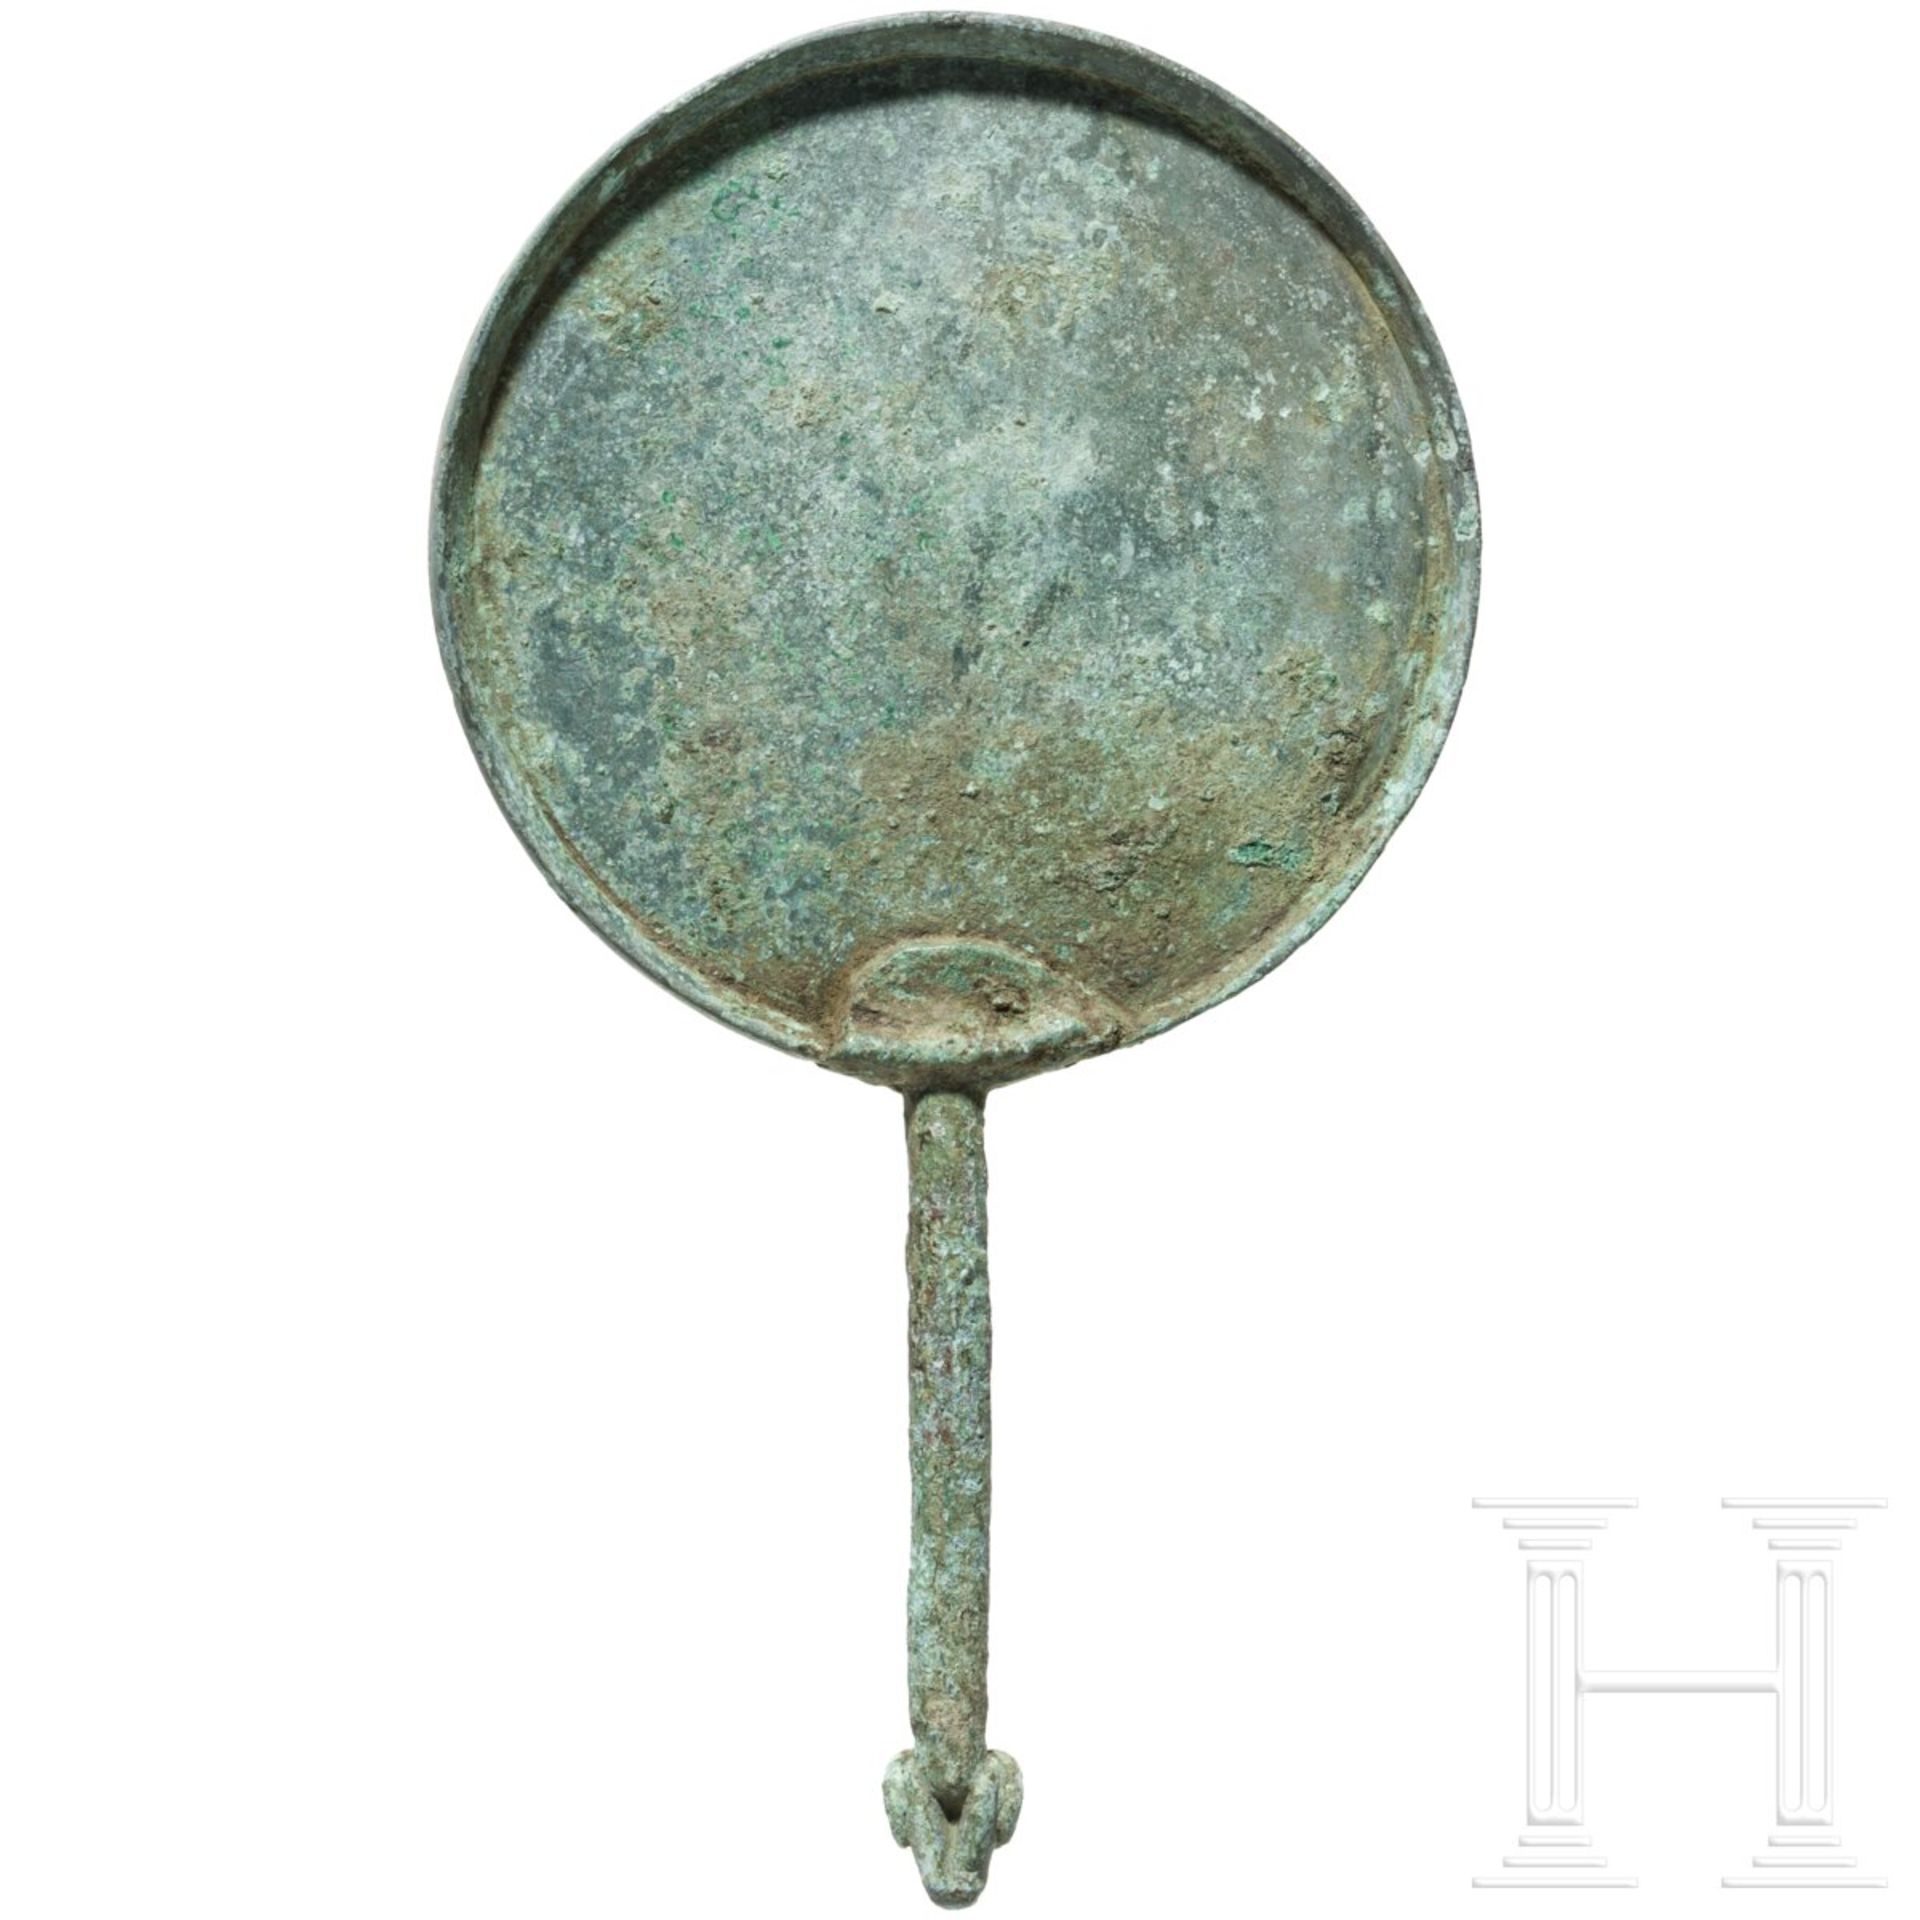 Skythischer Handspiegel aus Bronze, 5. Jhdt. v. Chr. - Image 4 of 4